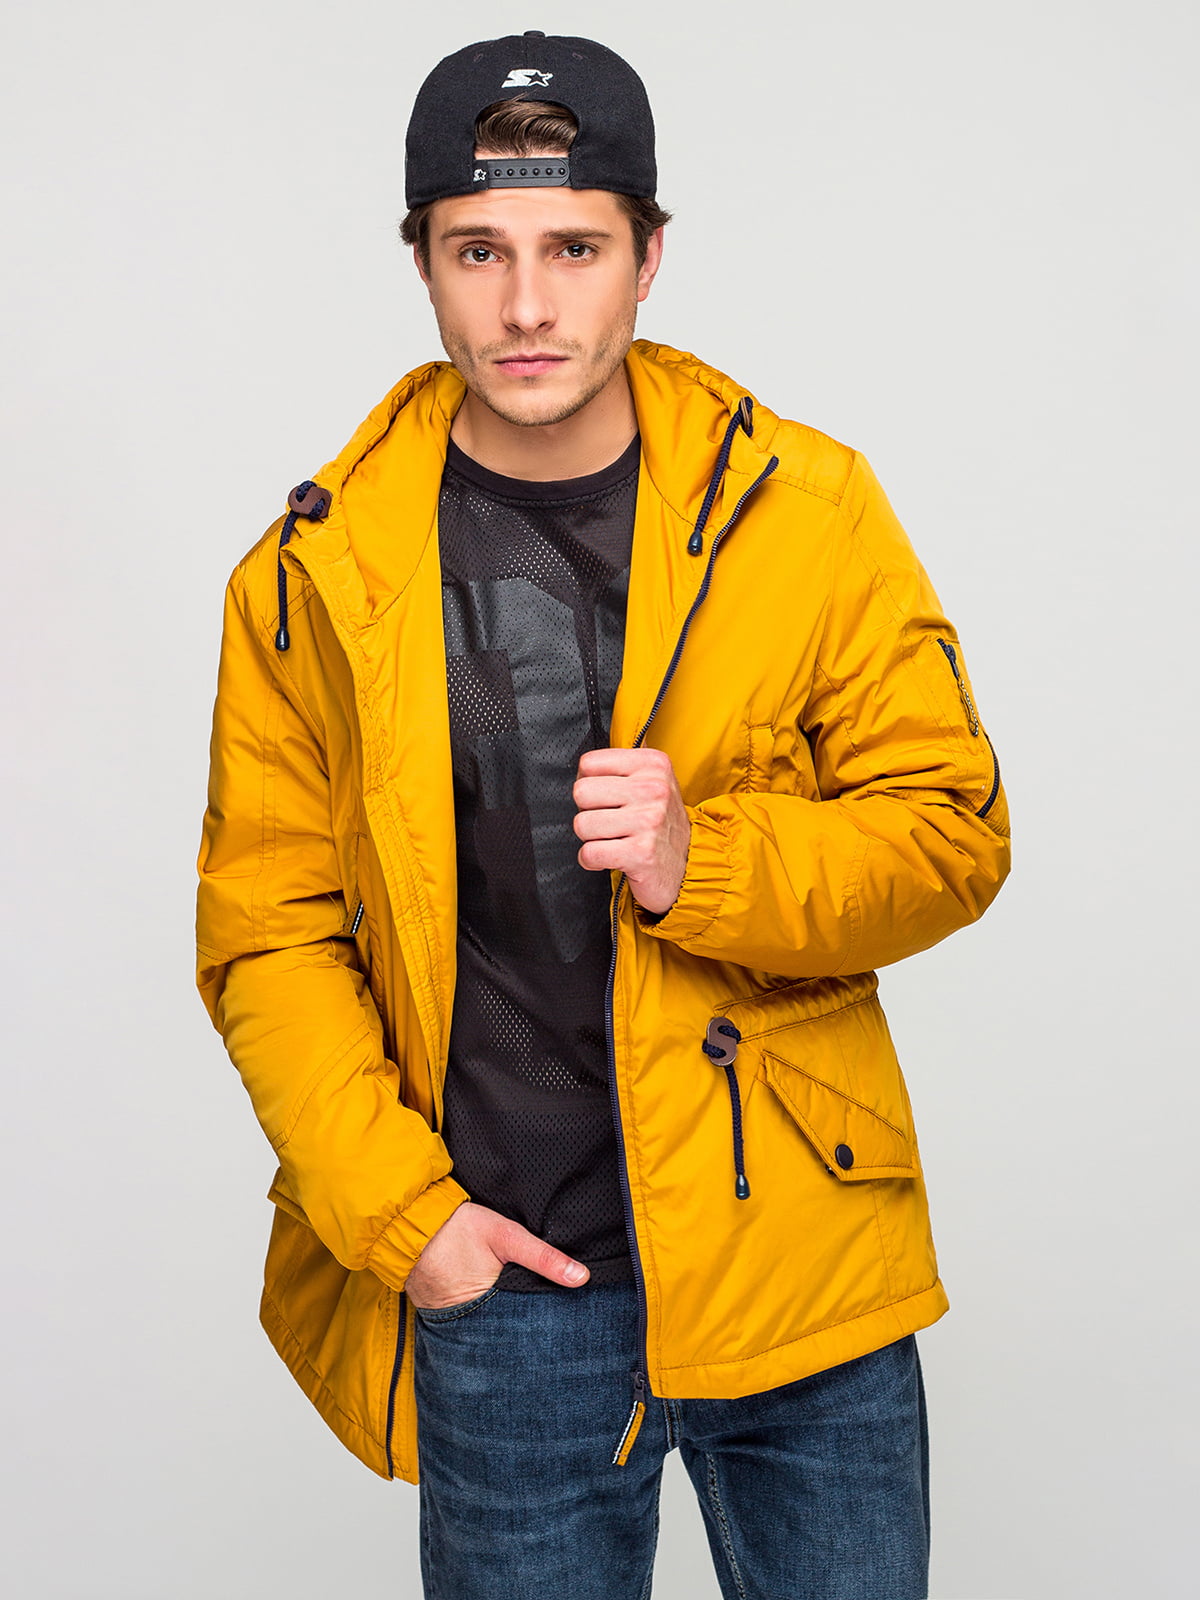 Дима Масленников в желтой куртке